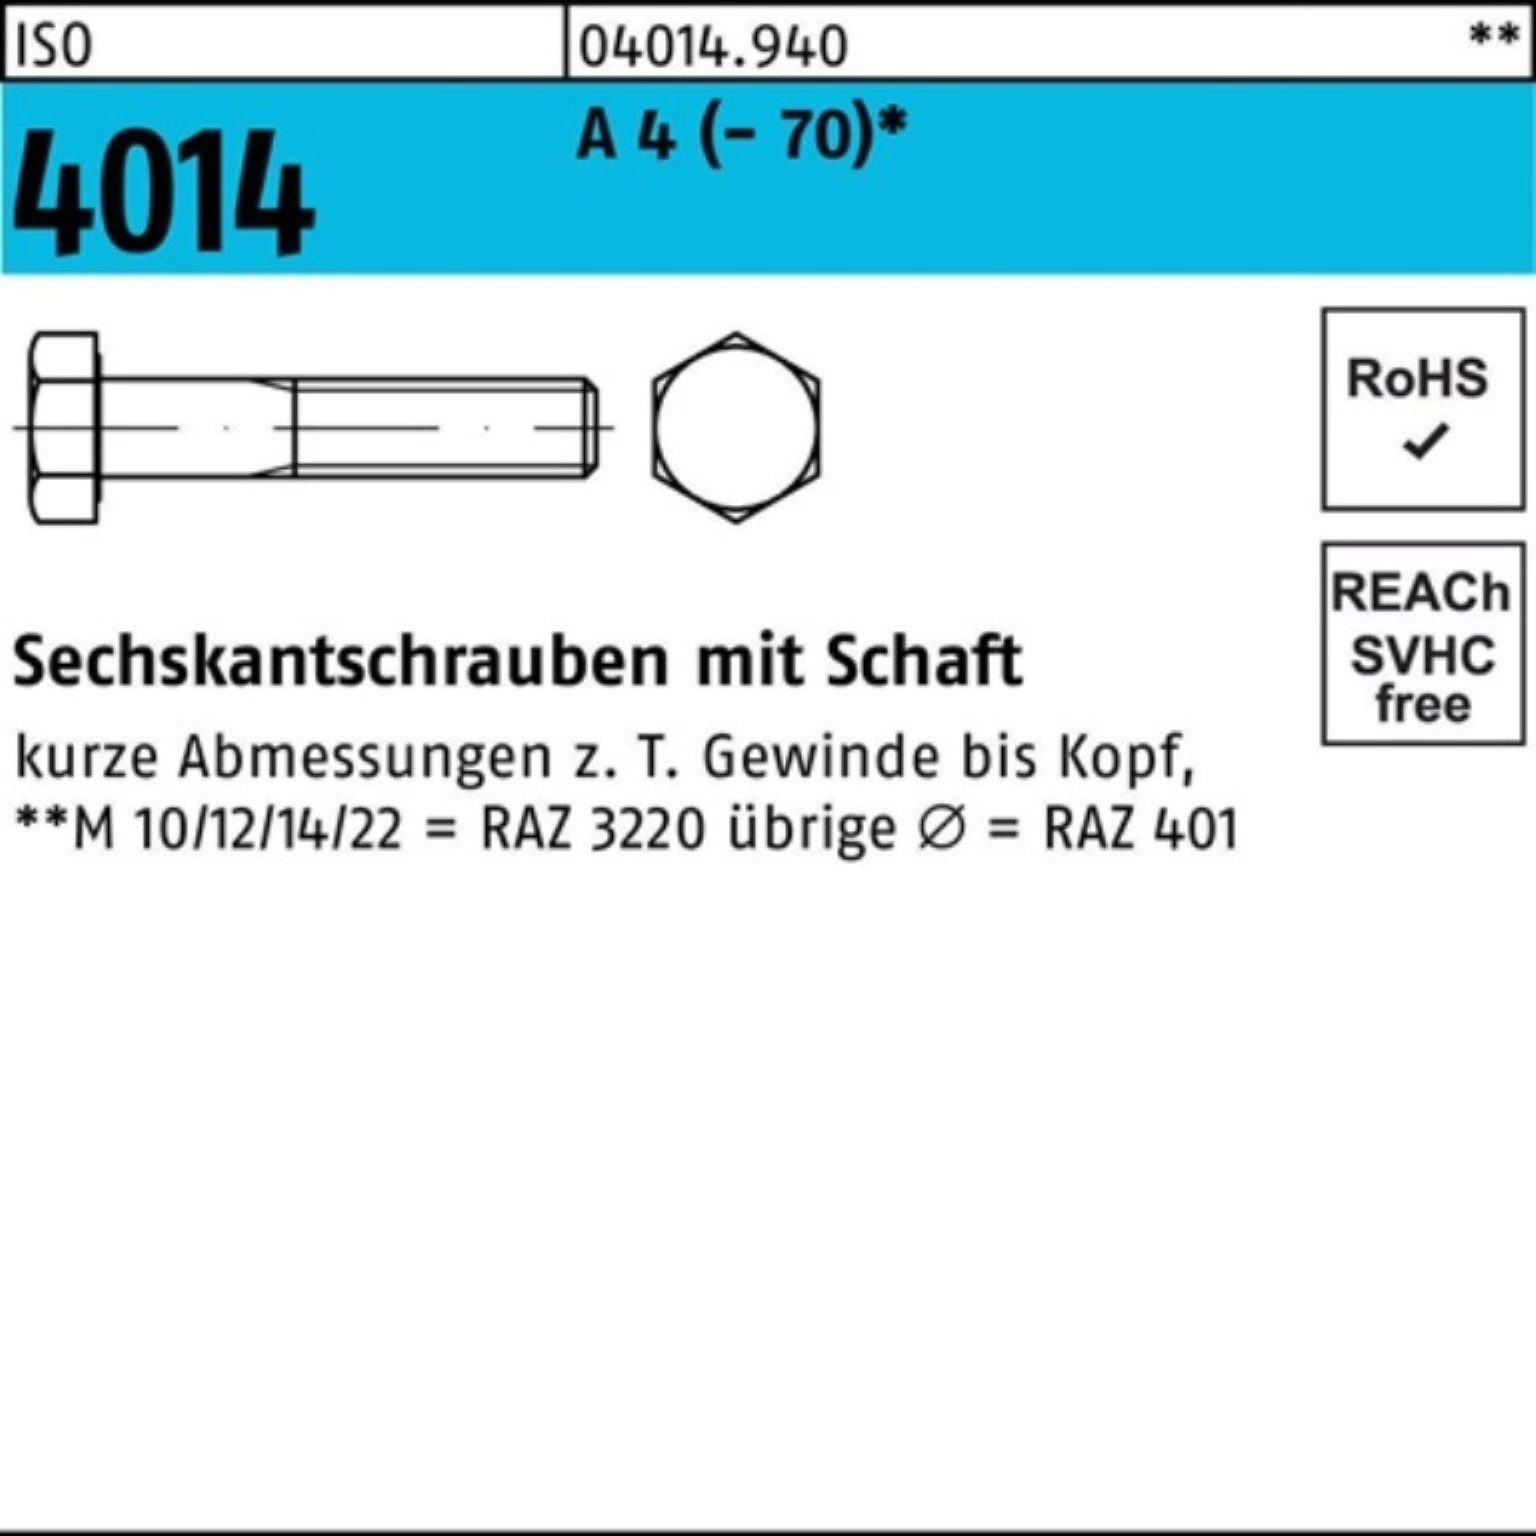 Bufab Sechskantschraube 100er Pack Sechskantschraube ISO 4014 Schaft M16x 75 A 4 (70) 25 St